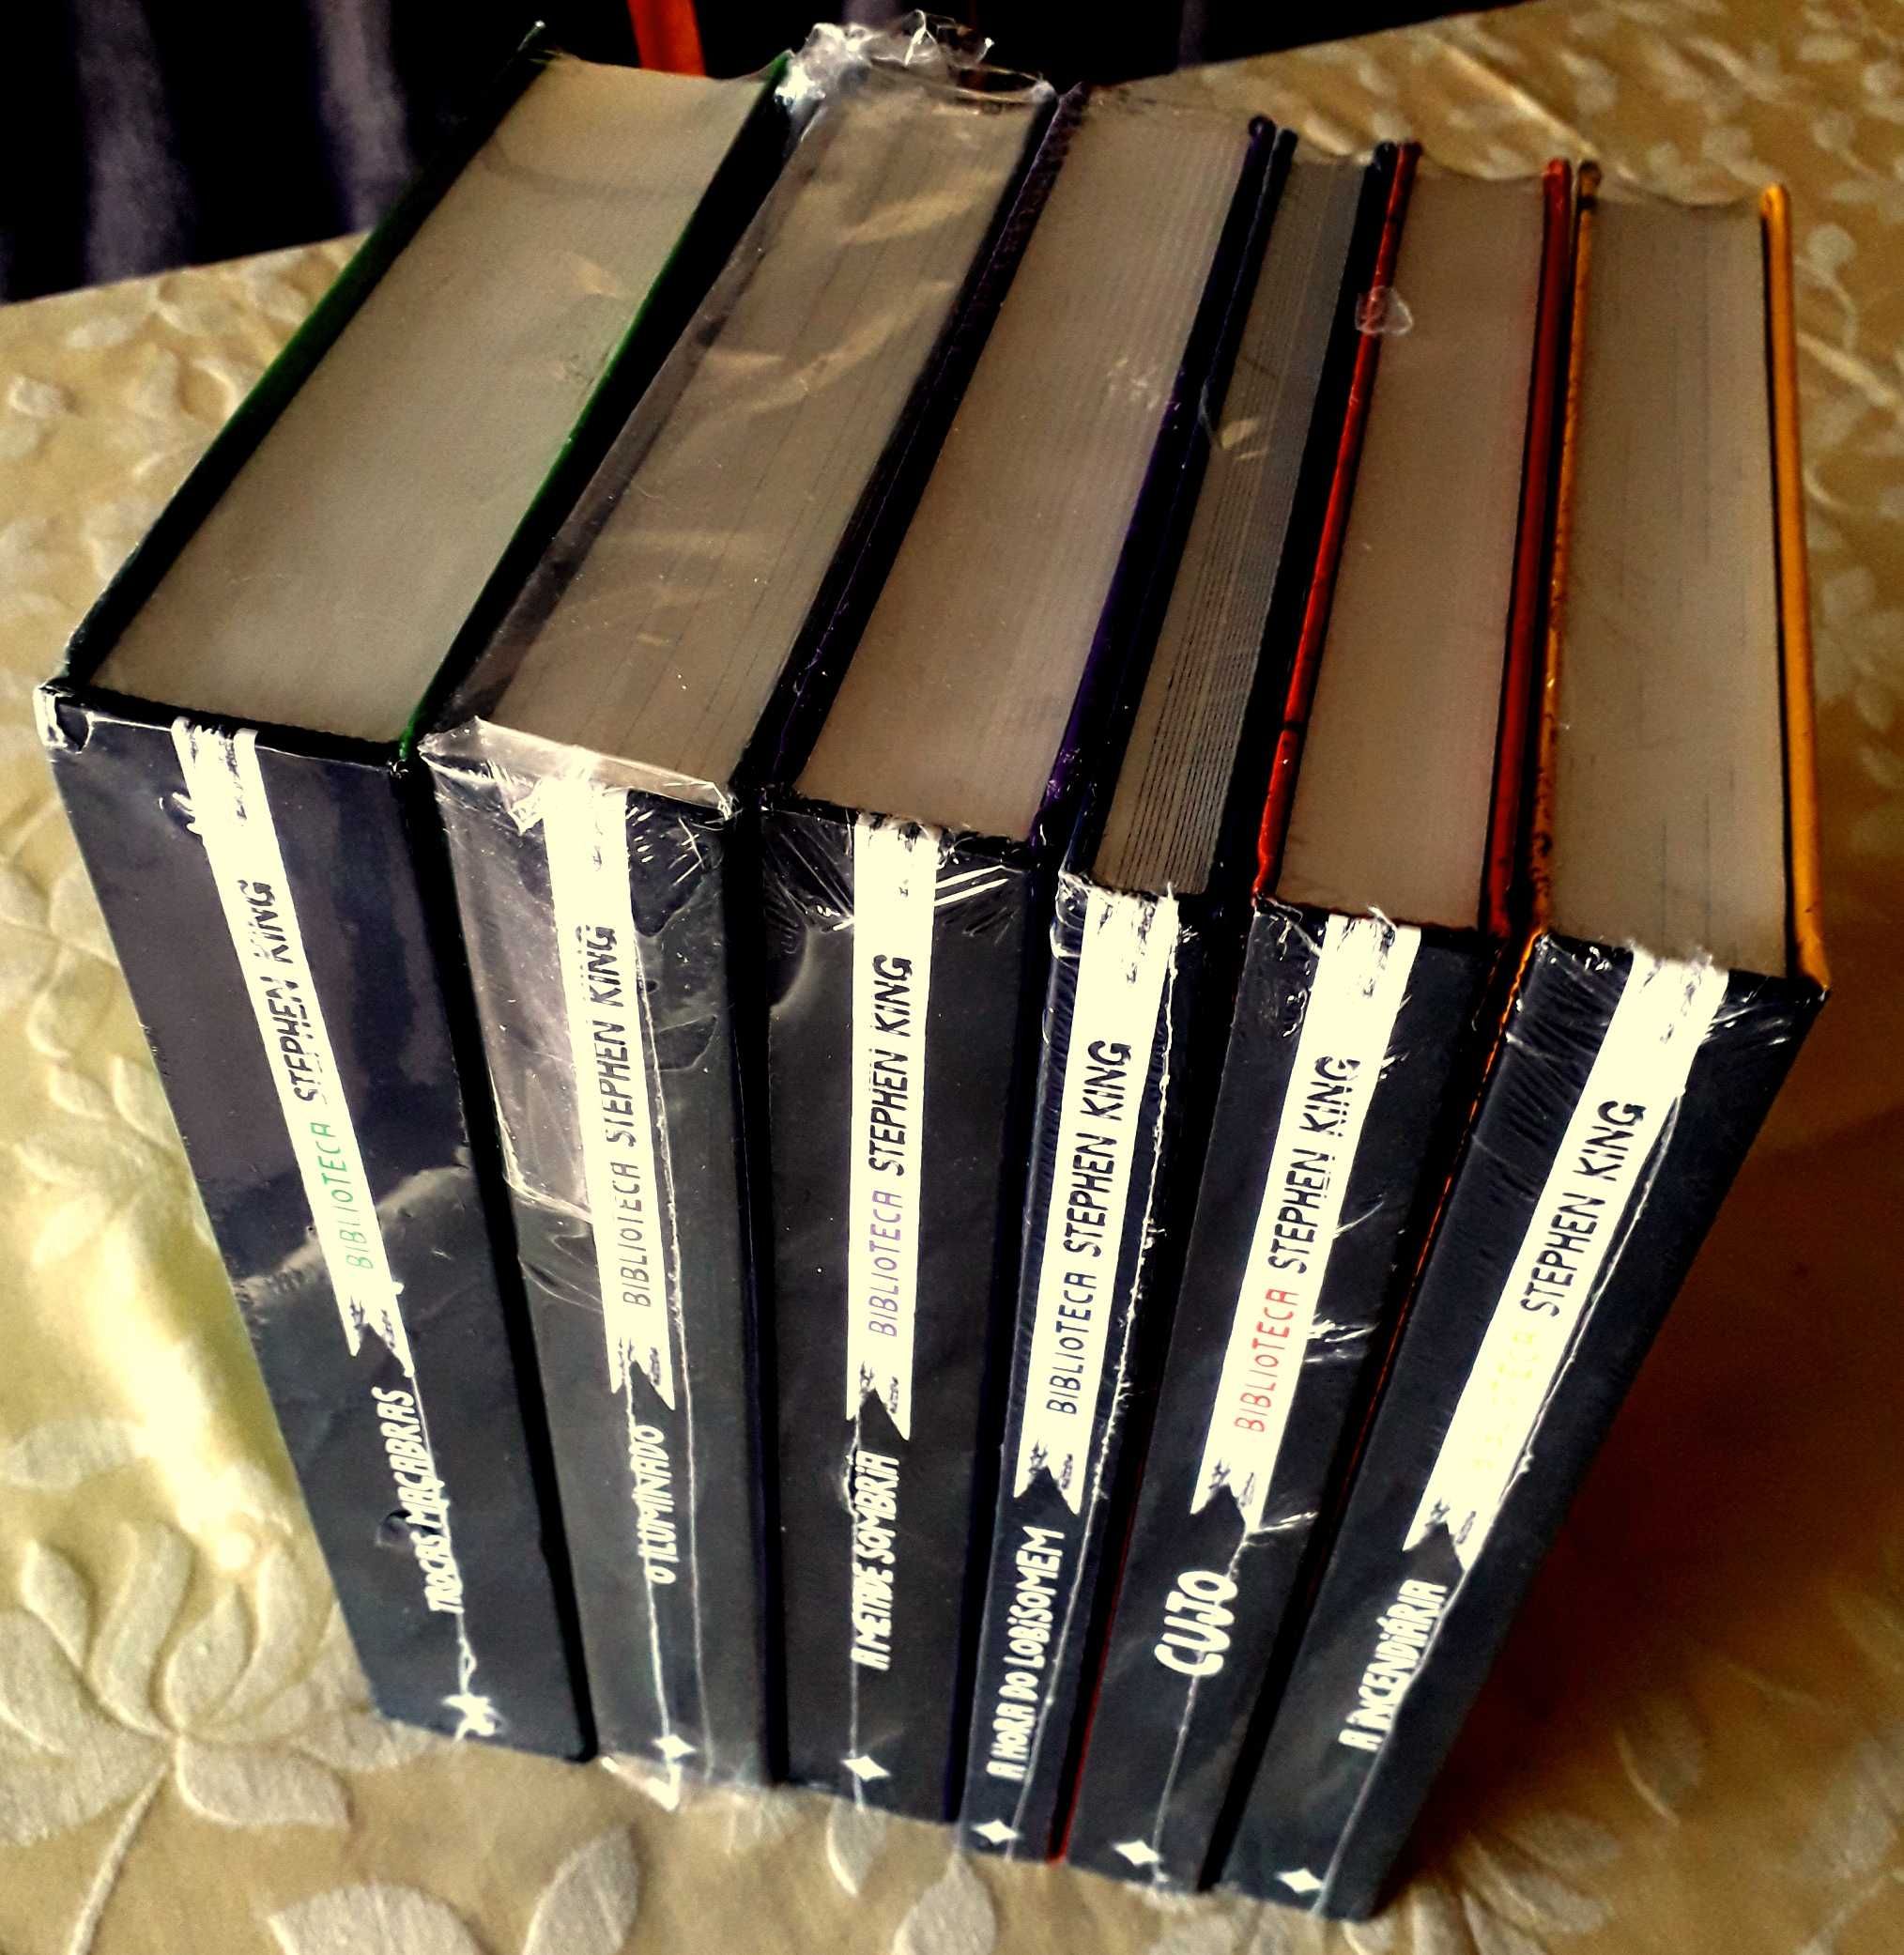 Biblioteca Stephen King - 3 obras capa dura (ed Deluxe  BRASIL) NOVOS